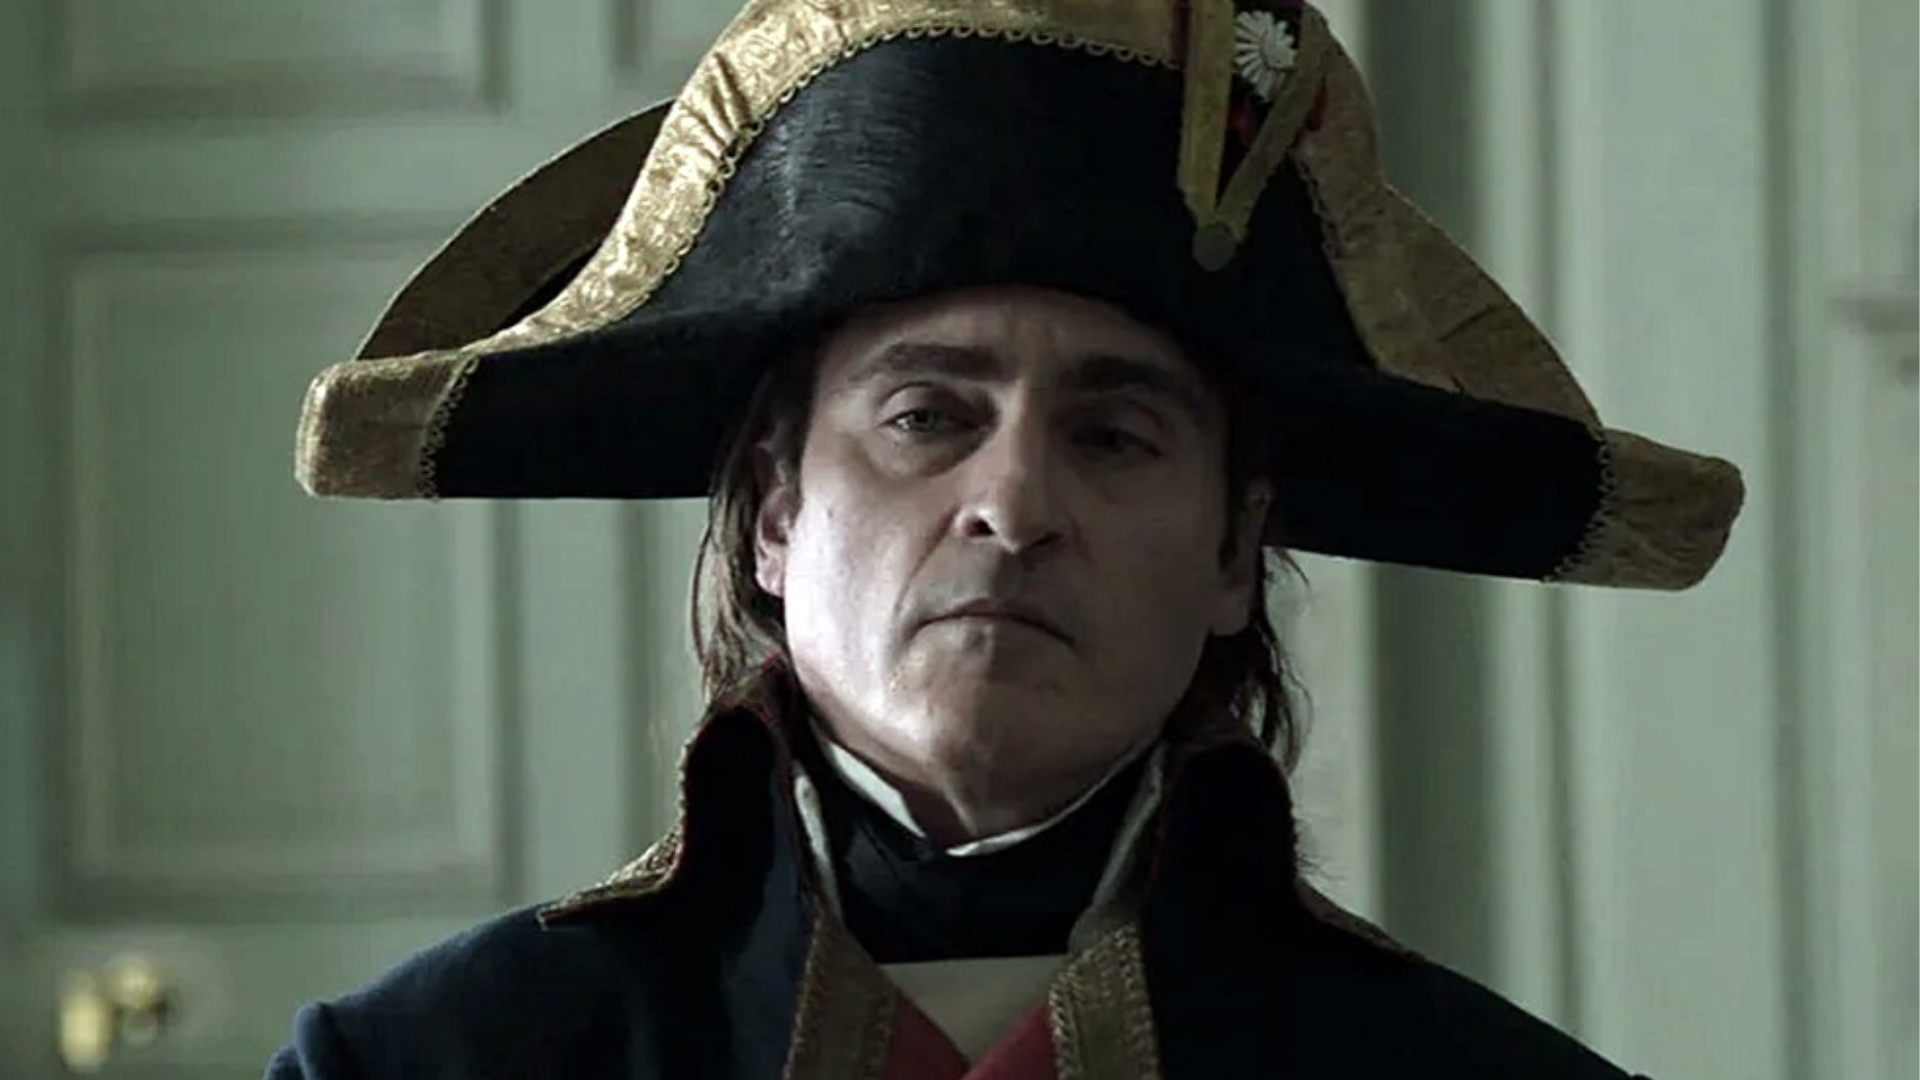 Divulgado novo trailer de Napoleão, com Joaquin Phoenix